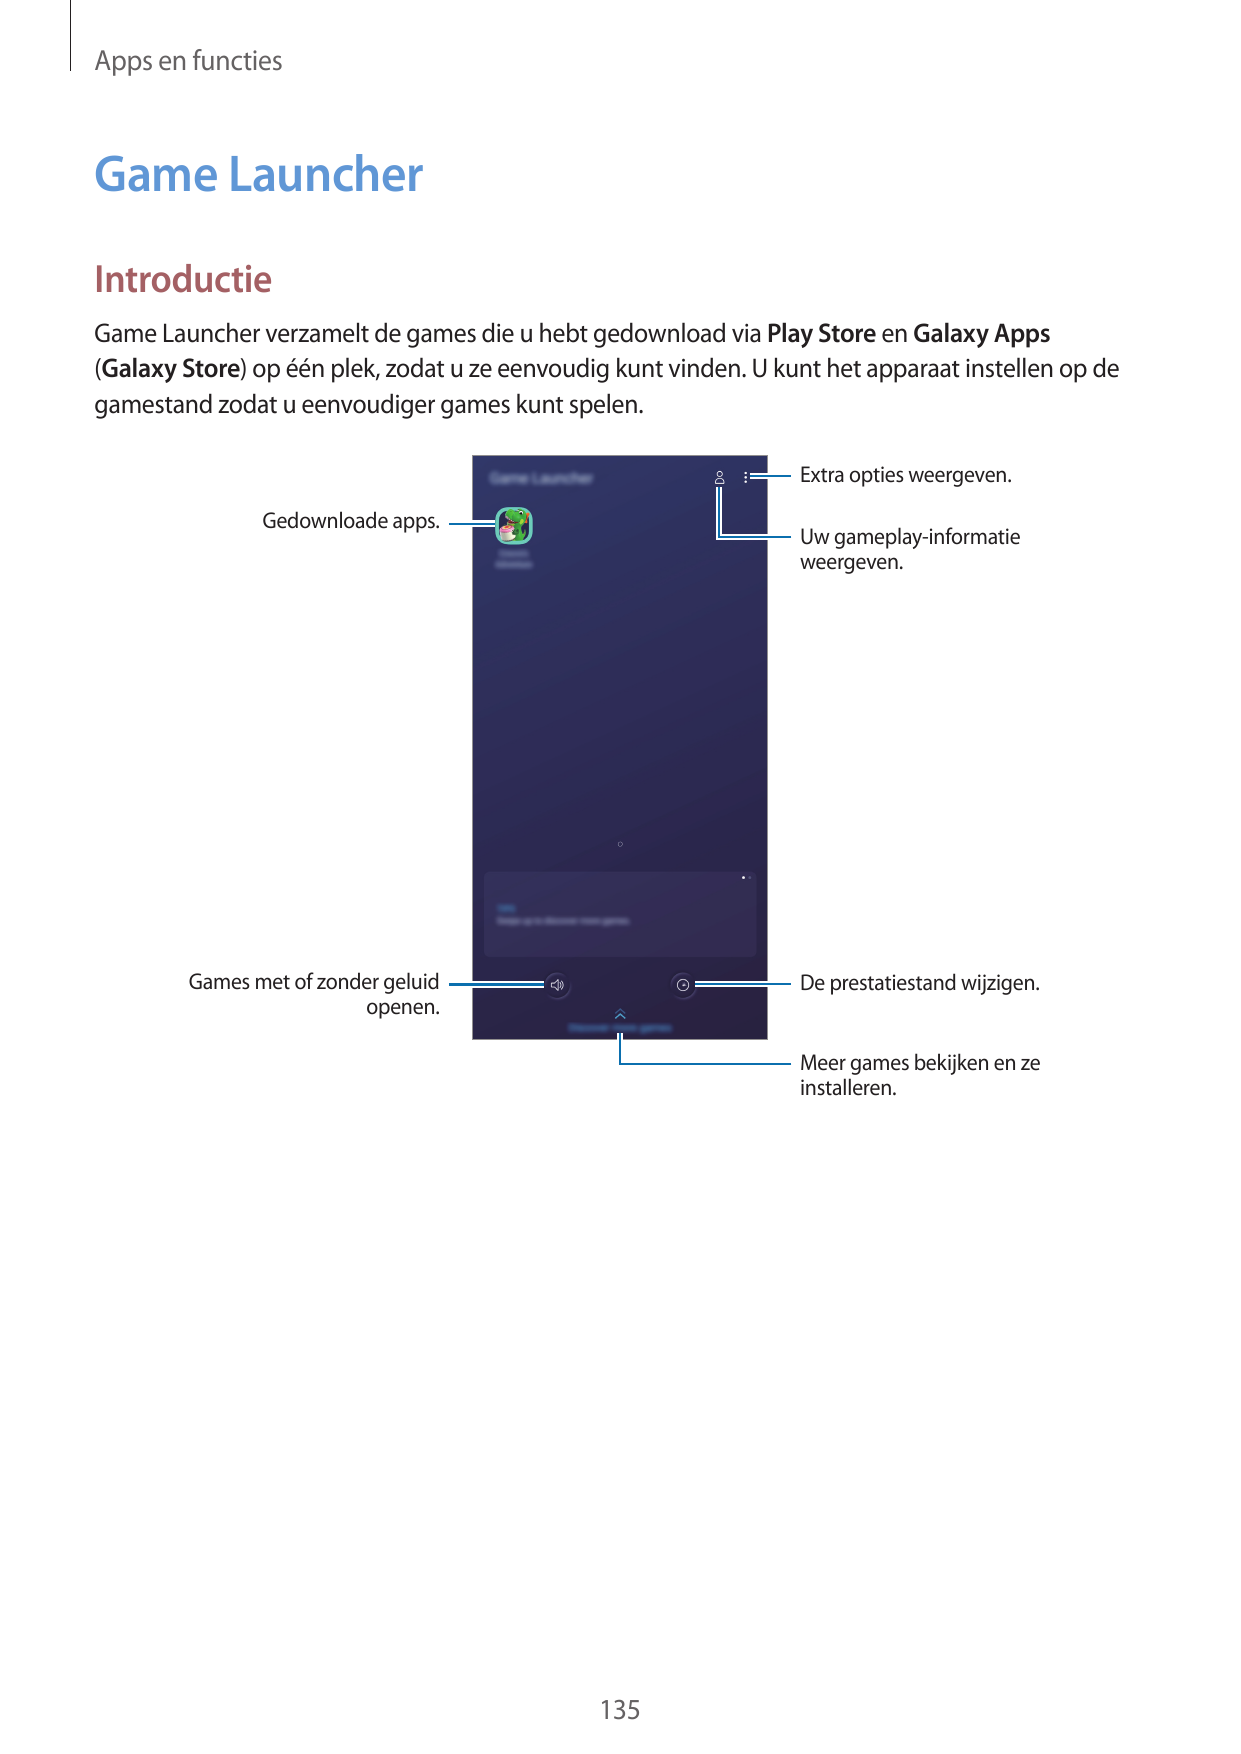 Apps en functiesGame LauncherIntroductieGame Launcher verzamelt de games die u hebt gedownload via Play Store en Galaxy Apps(Gal